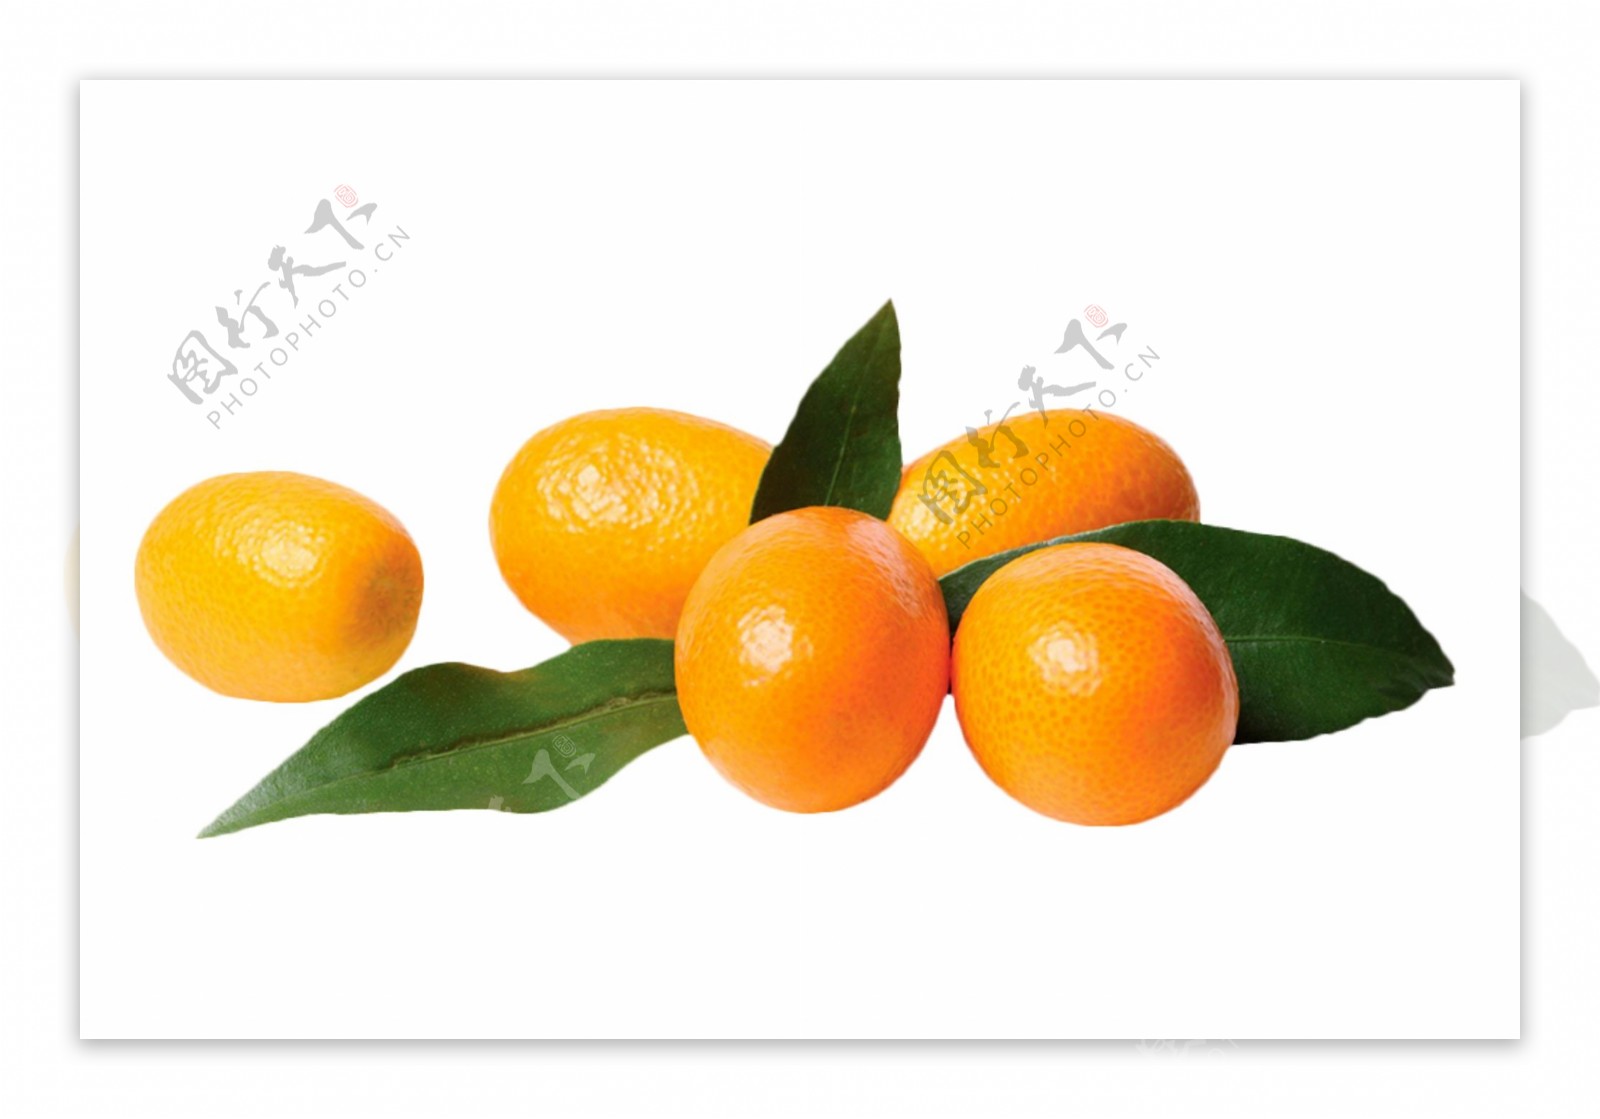 桔子橙子香橙水果素材